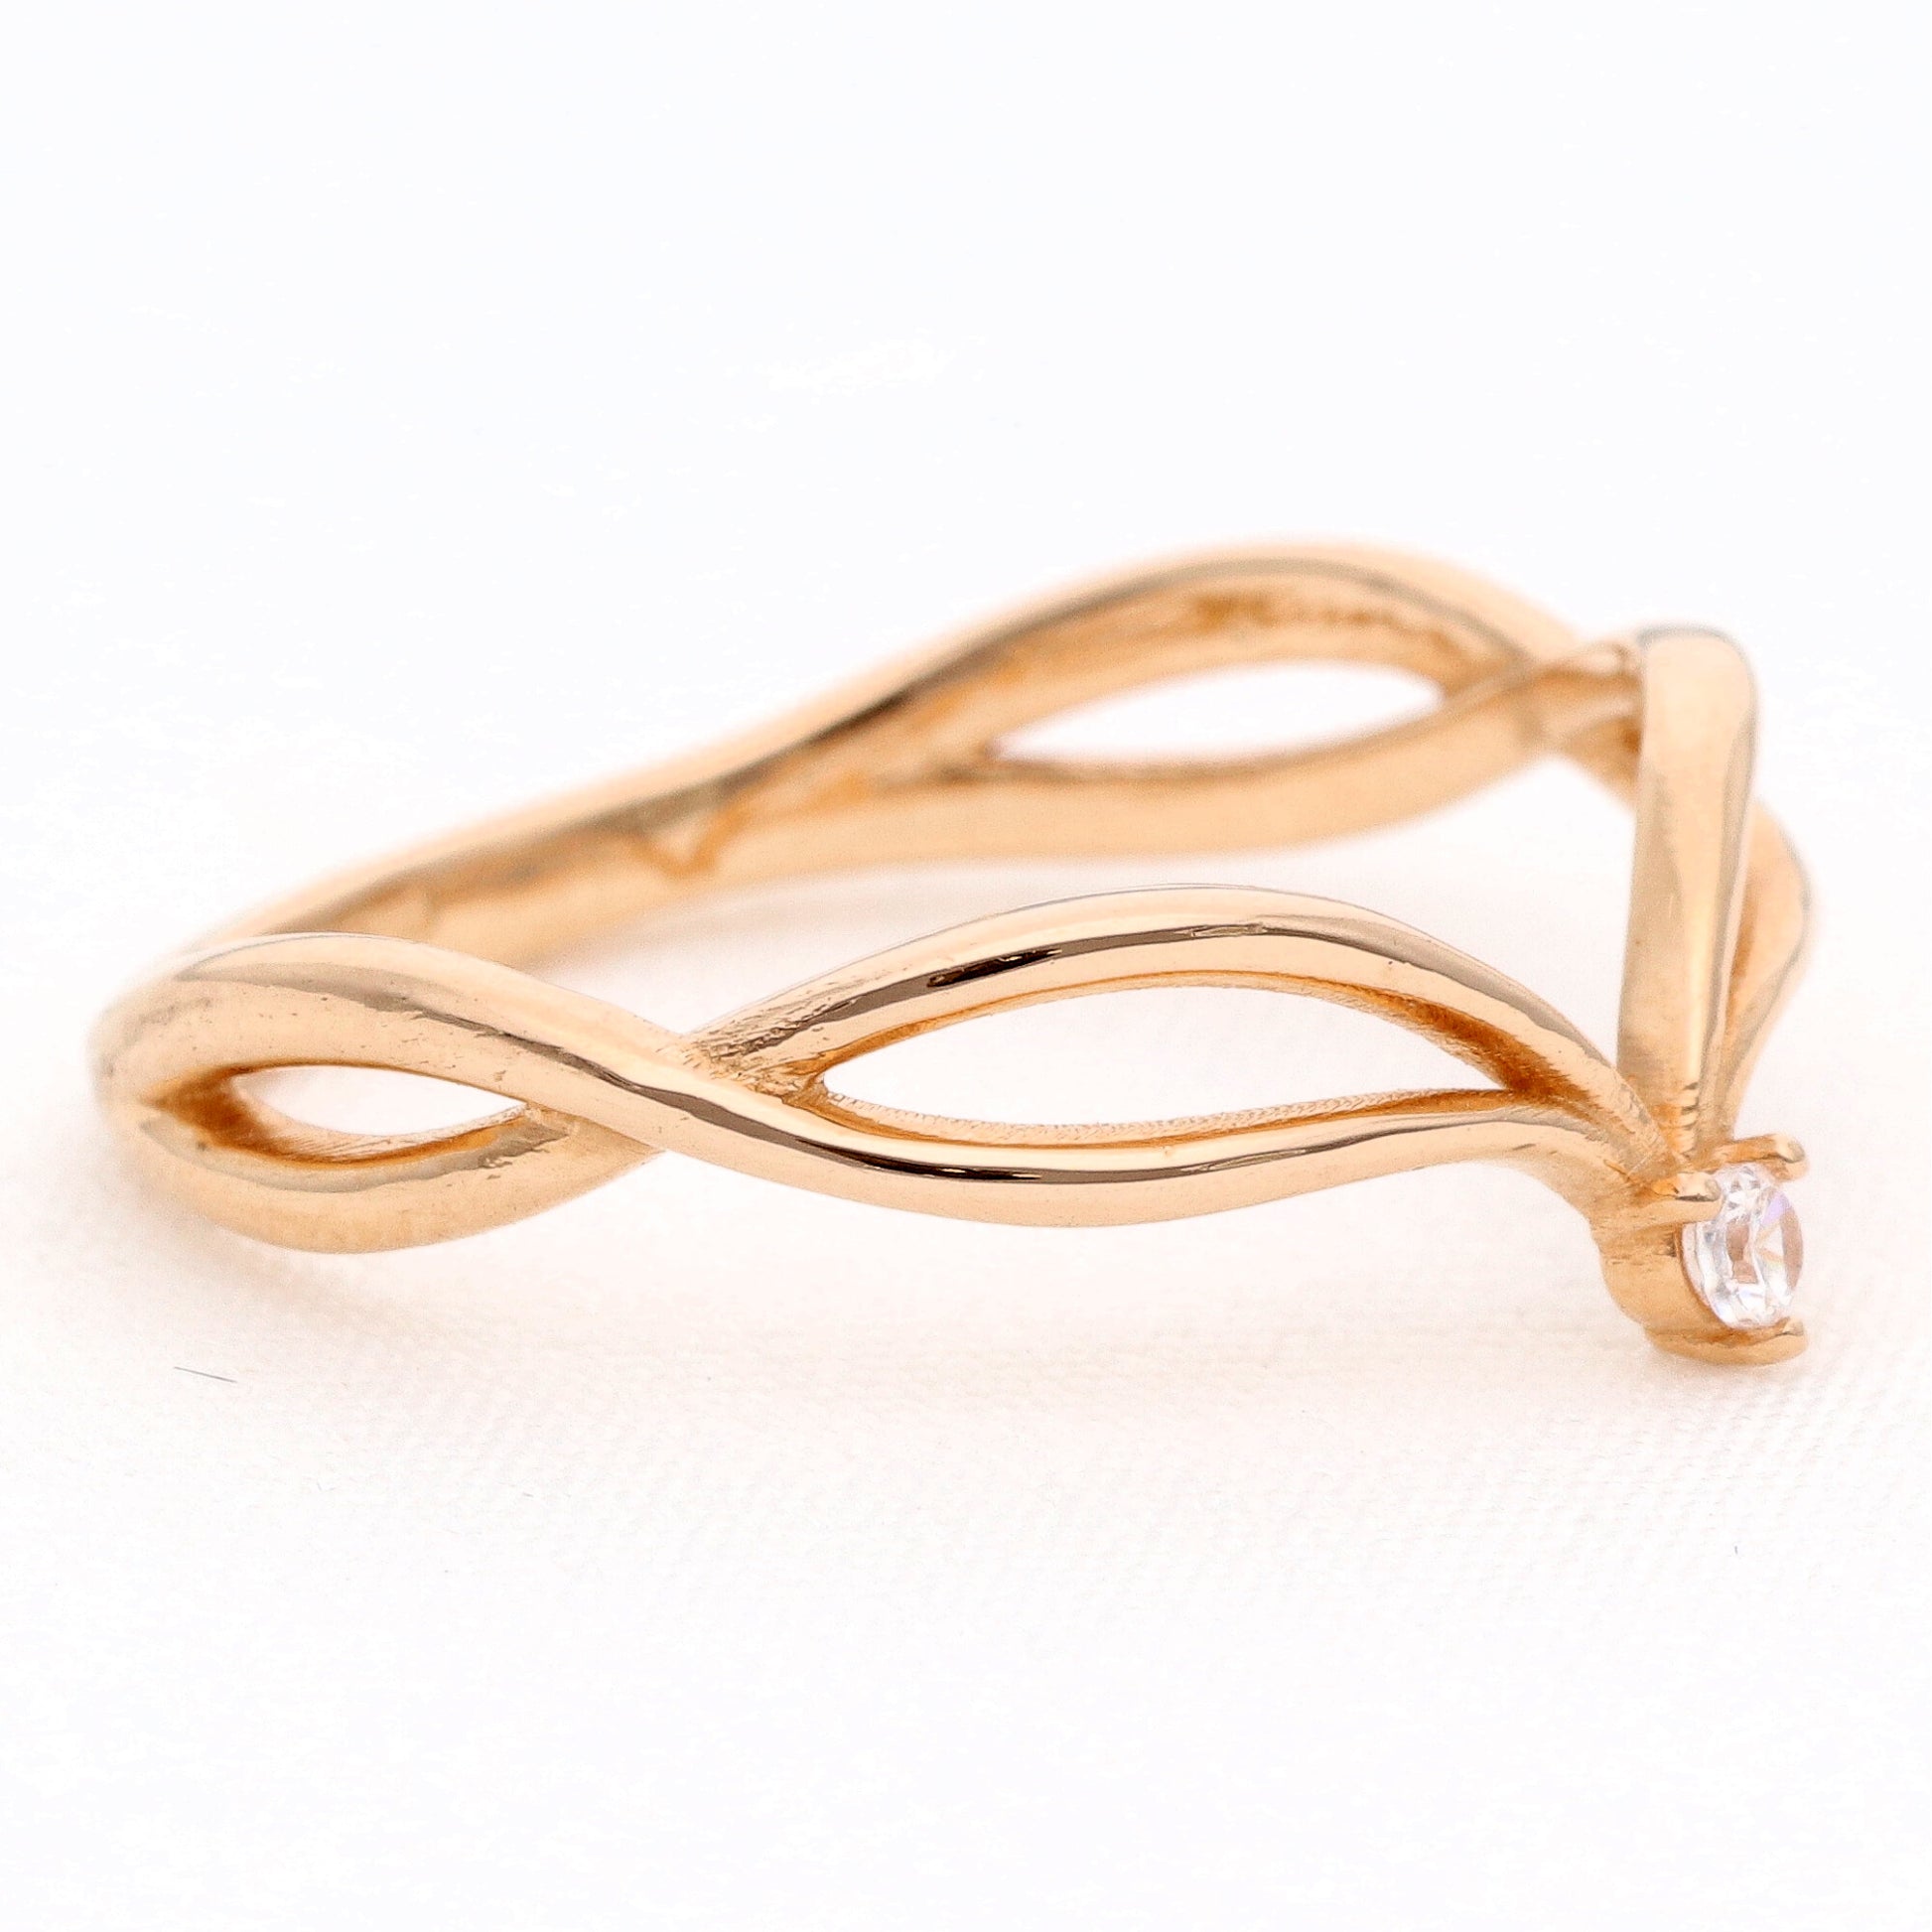 Auksinis žiedas su cirkoniu vestuviniaiziedai.lt